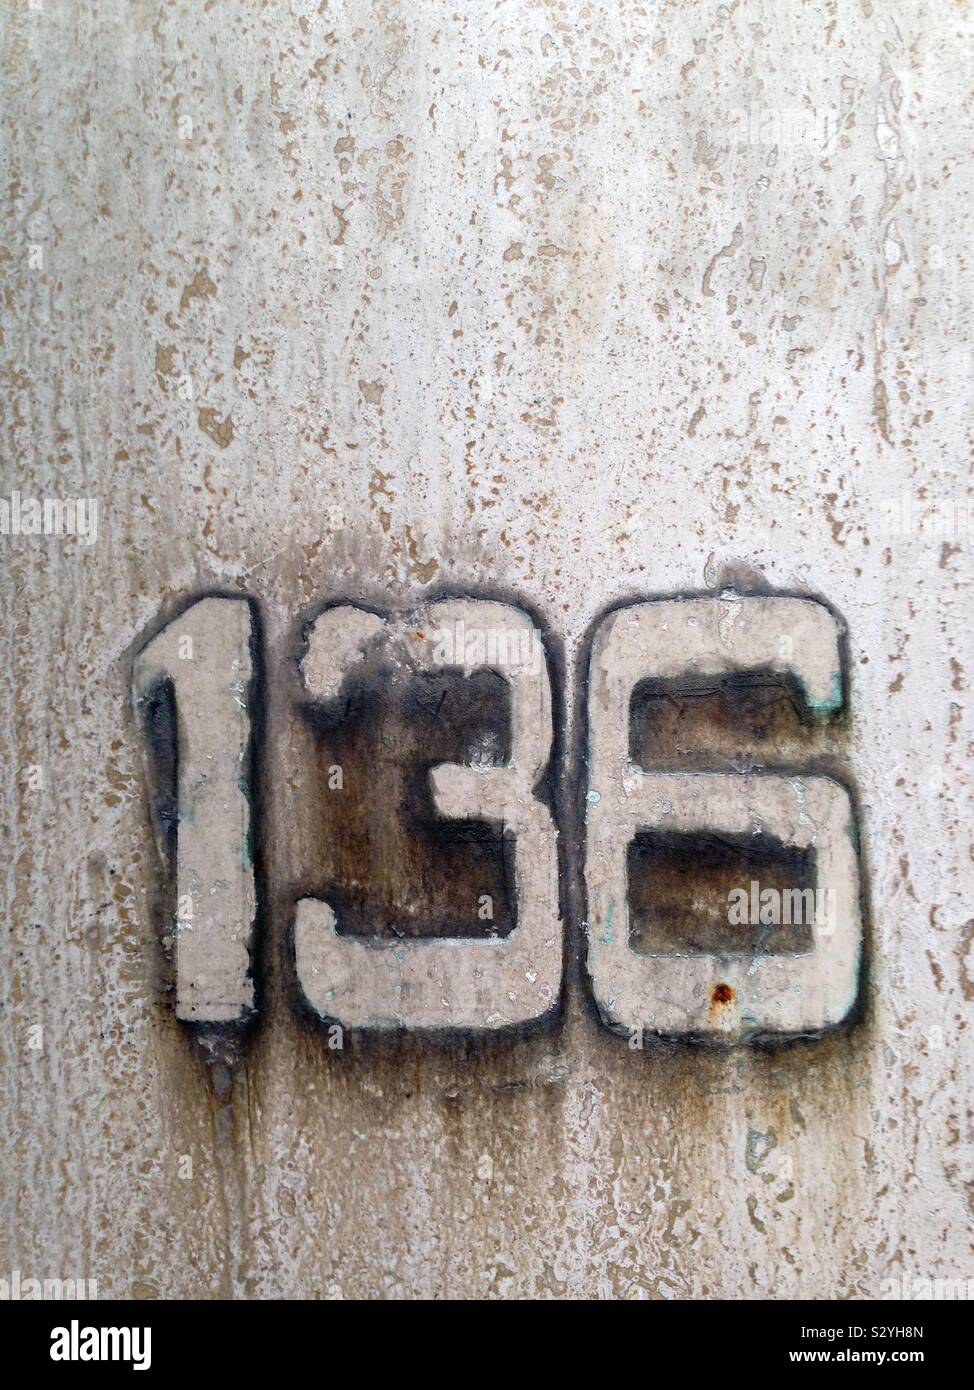 Las manchas y marcas esbozando la puerta número 136 cuando los números se retiraron de la puerta Foto de stock